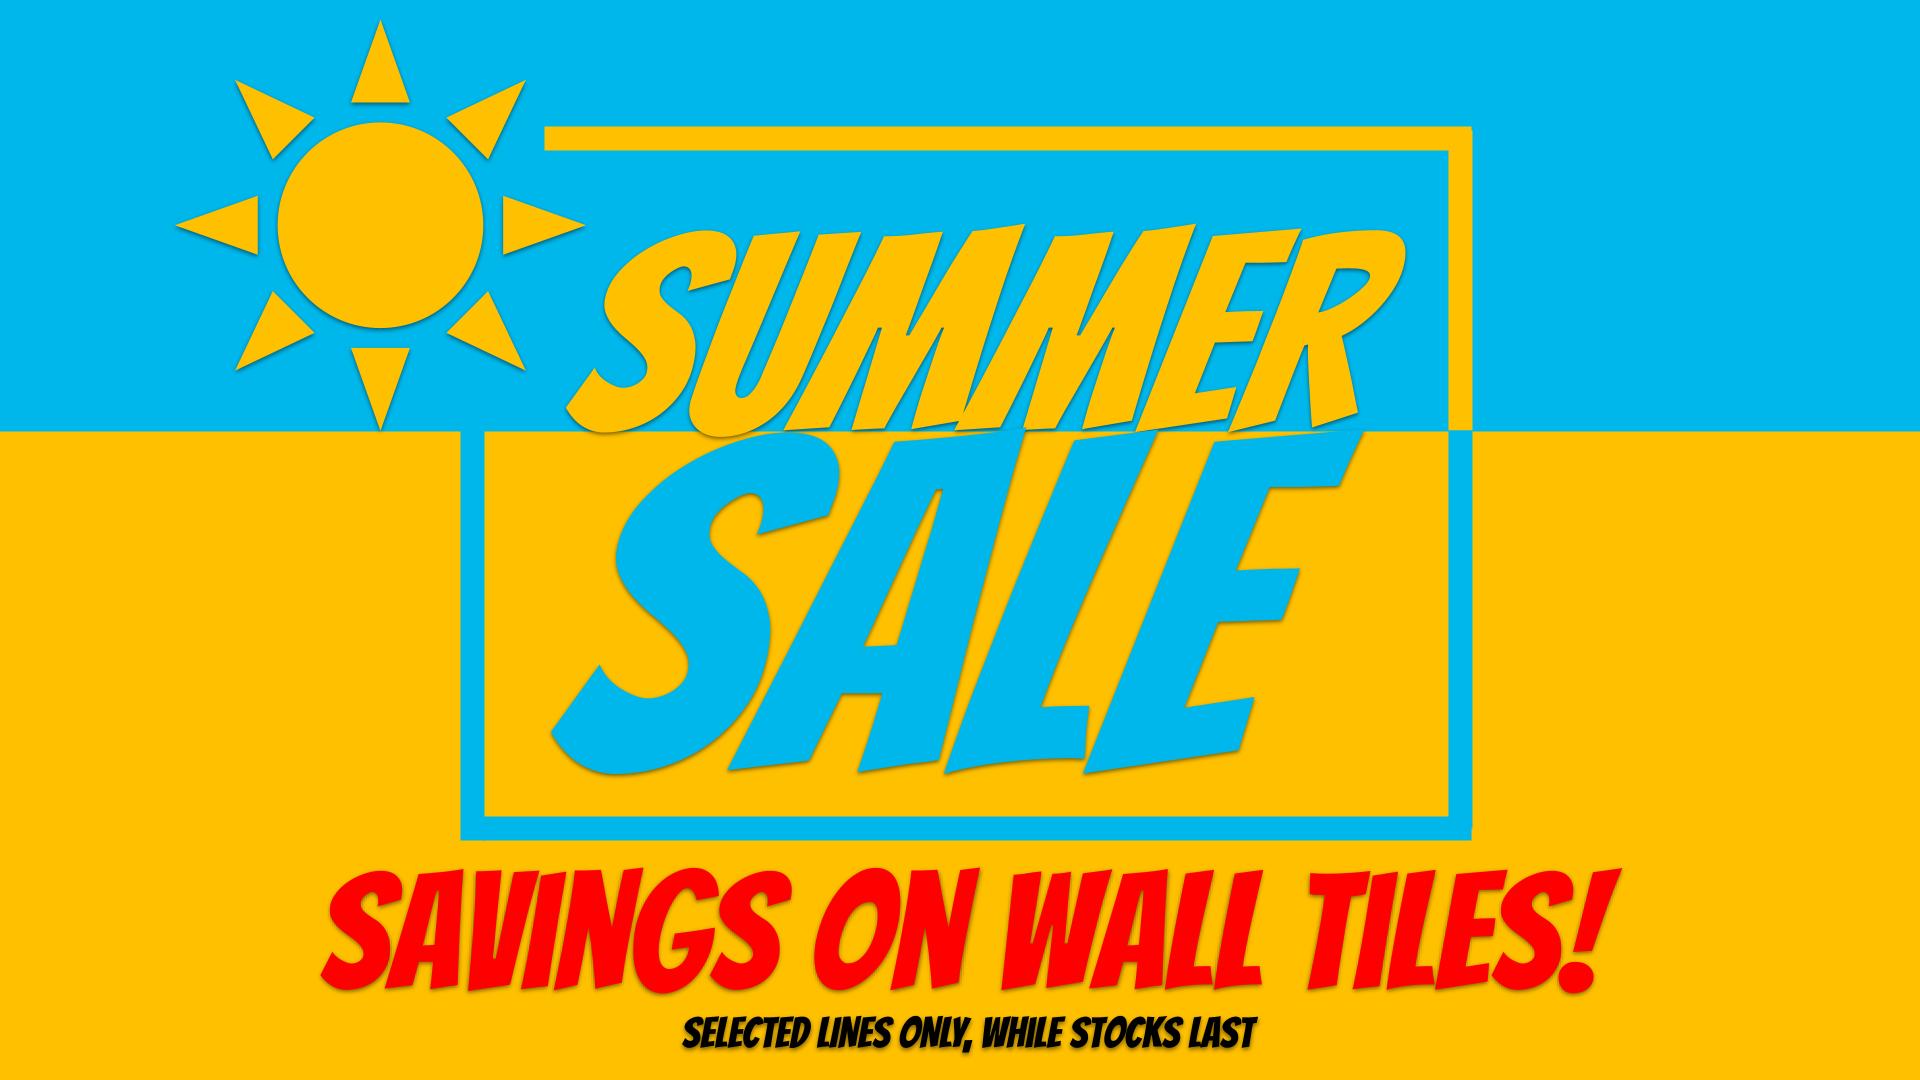 Summer Sale - Wall Tiles